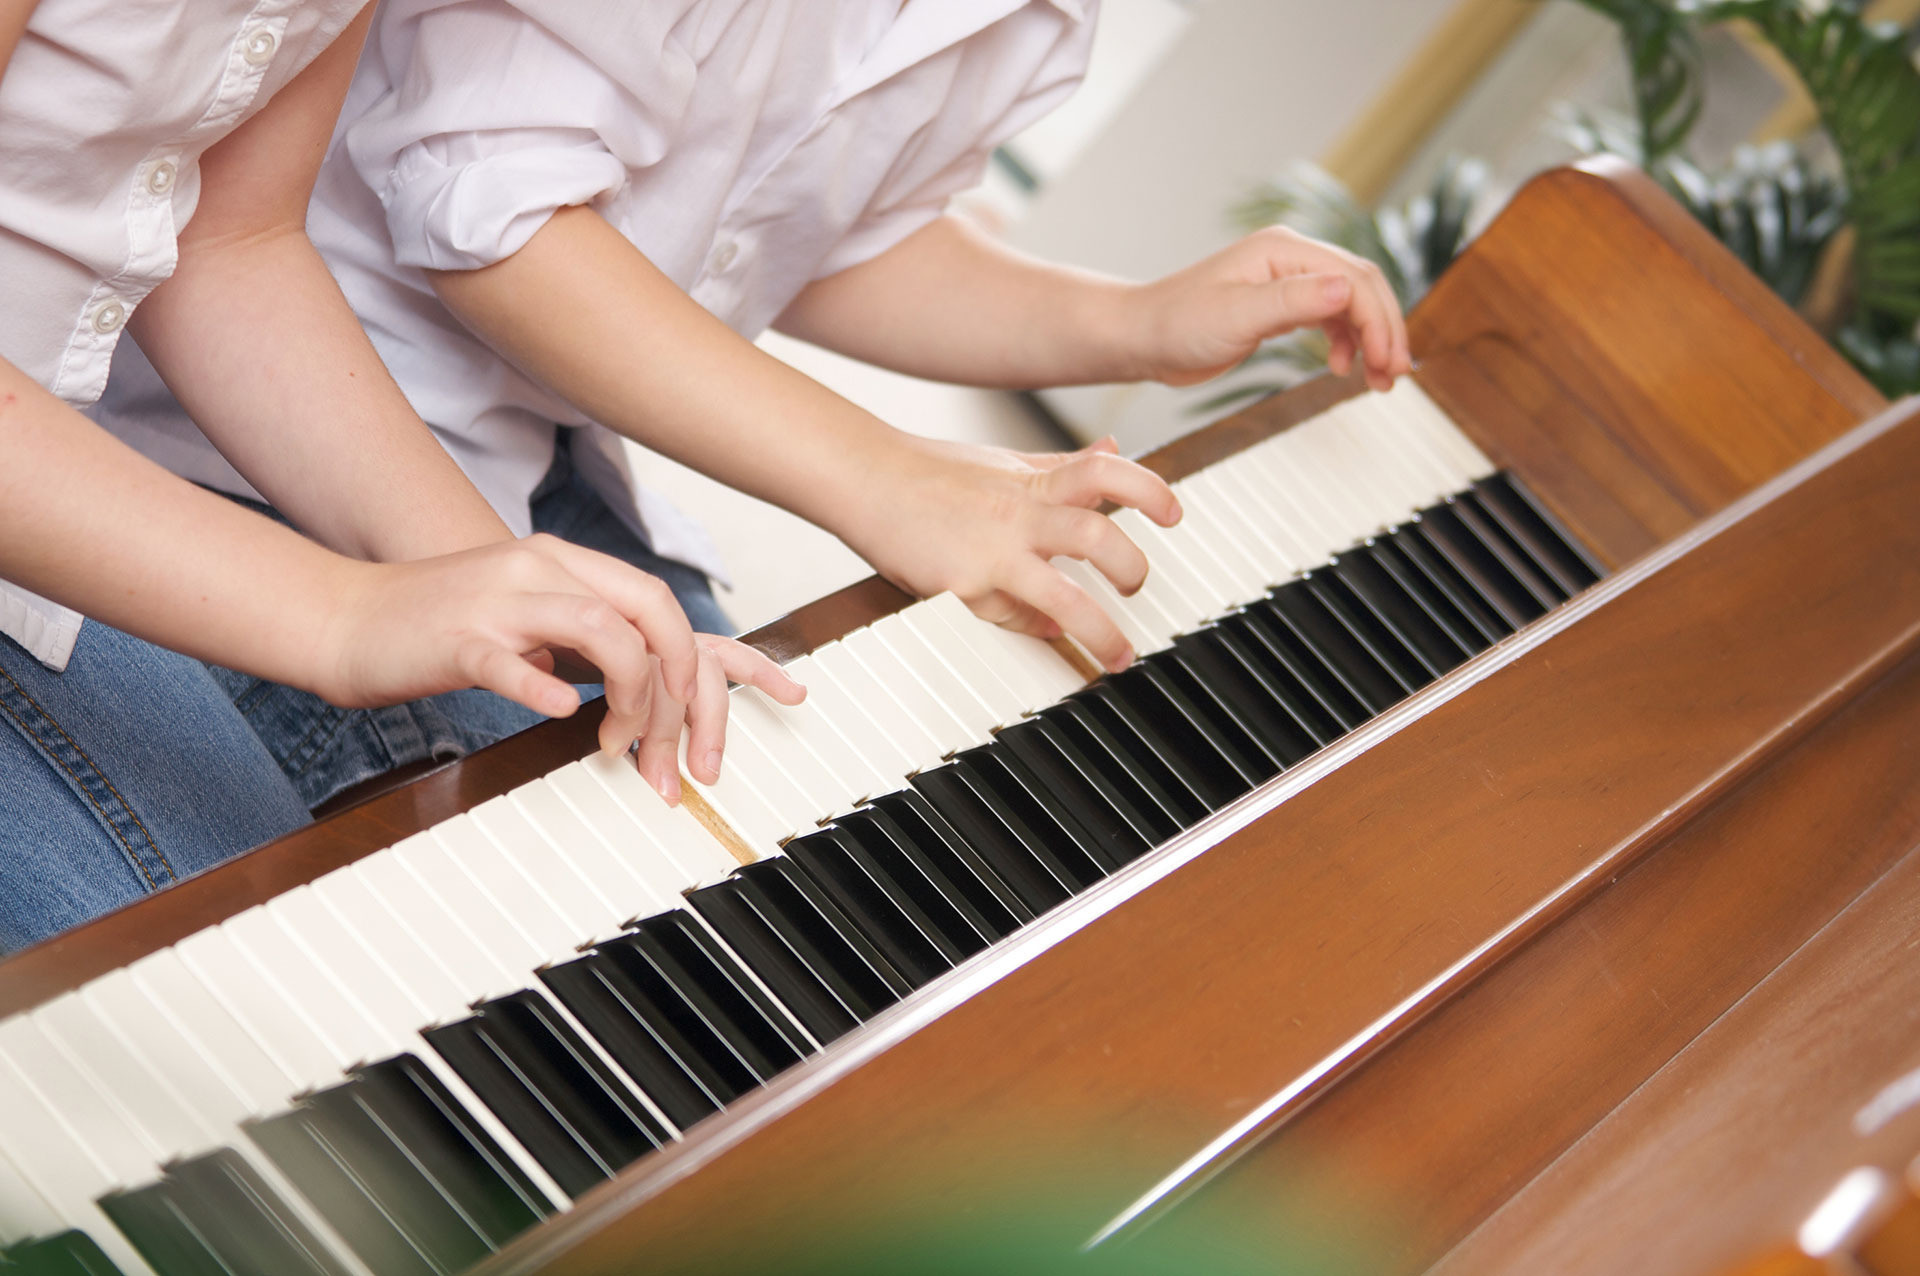 ピアノを習いたい大人の初心者の方のための楽譜も多数あります。知っている曲を両手で弾けるものは楽しくてお勧めです。